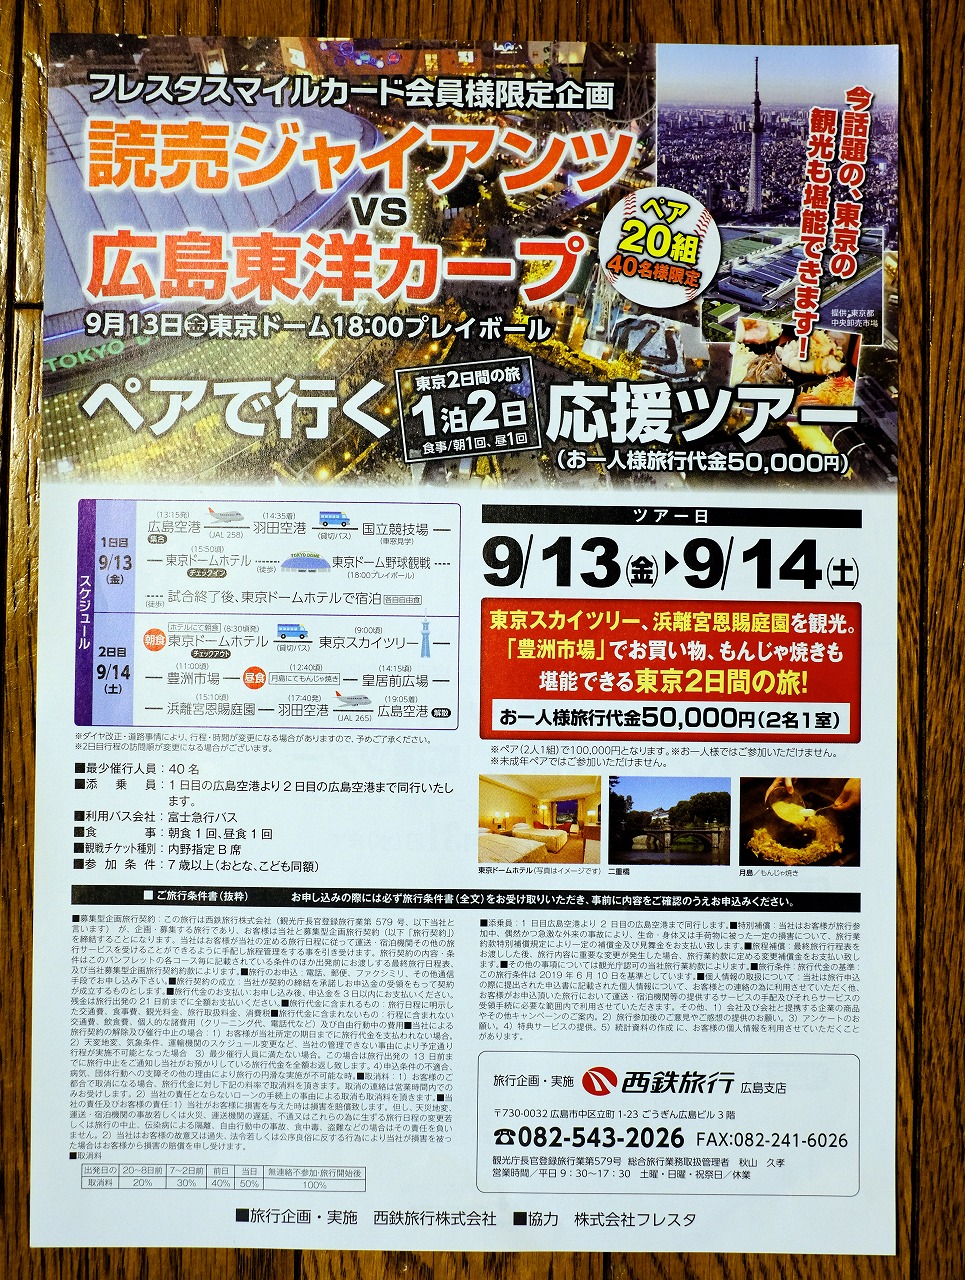 フレスタで東京観光付きのカープ応援ツアー募集中 9 13 金 東京ドームの巨人戦